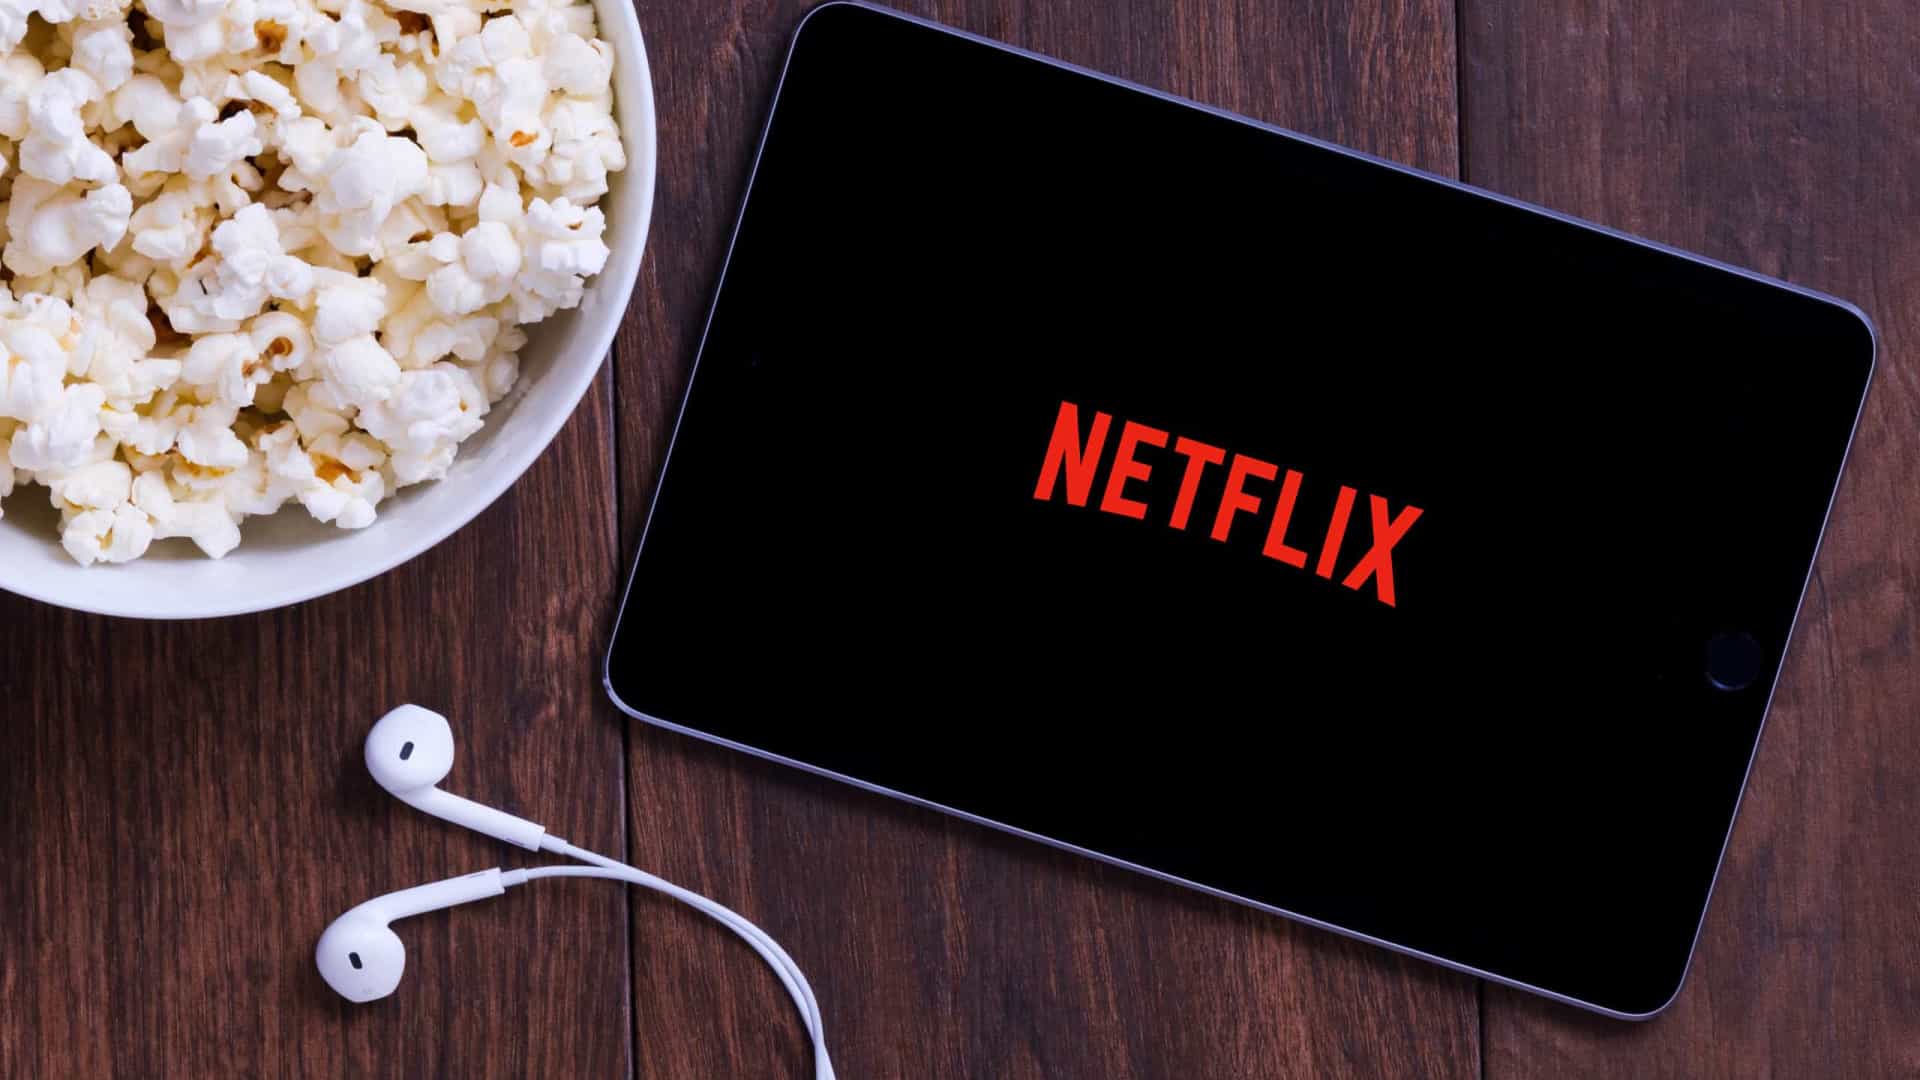 Procon-SP notifica Netflix por possível cobrança para compartilhamento de senha